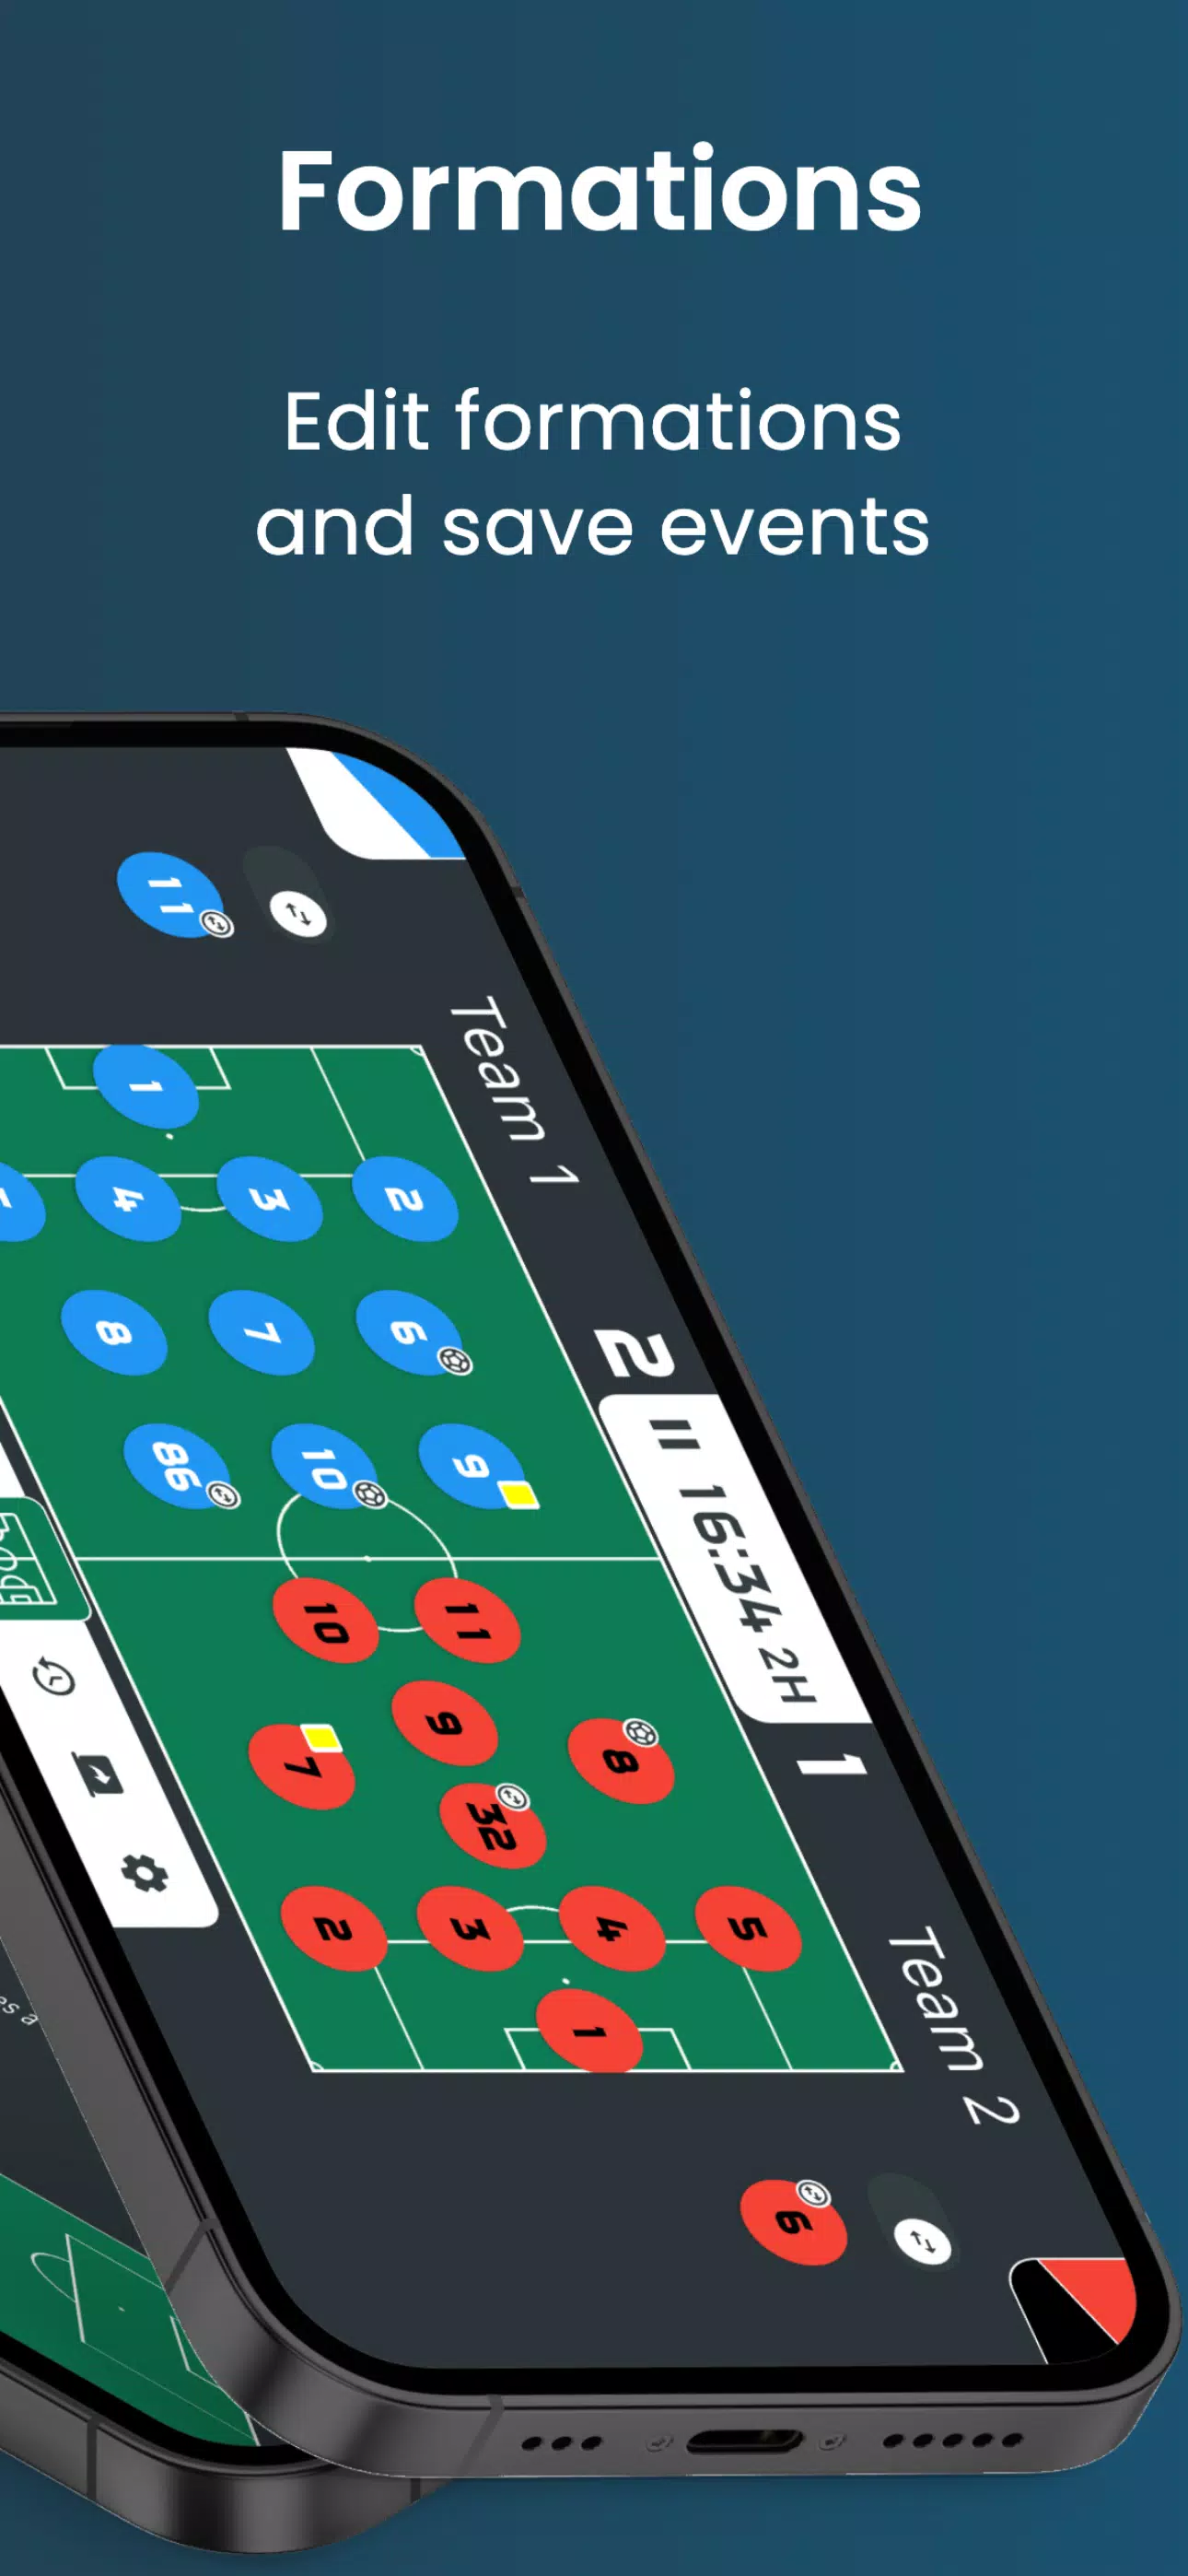 Download do APK de Placar de Futebol para Android